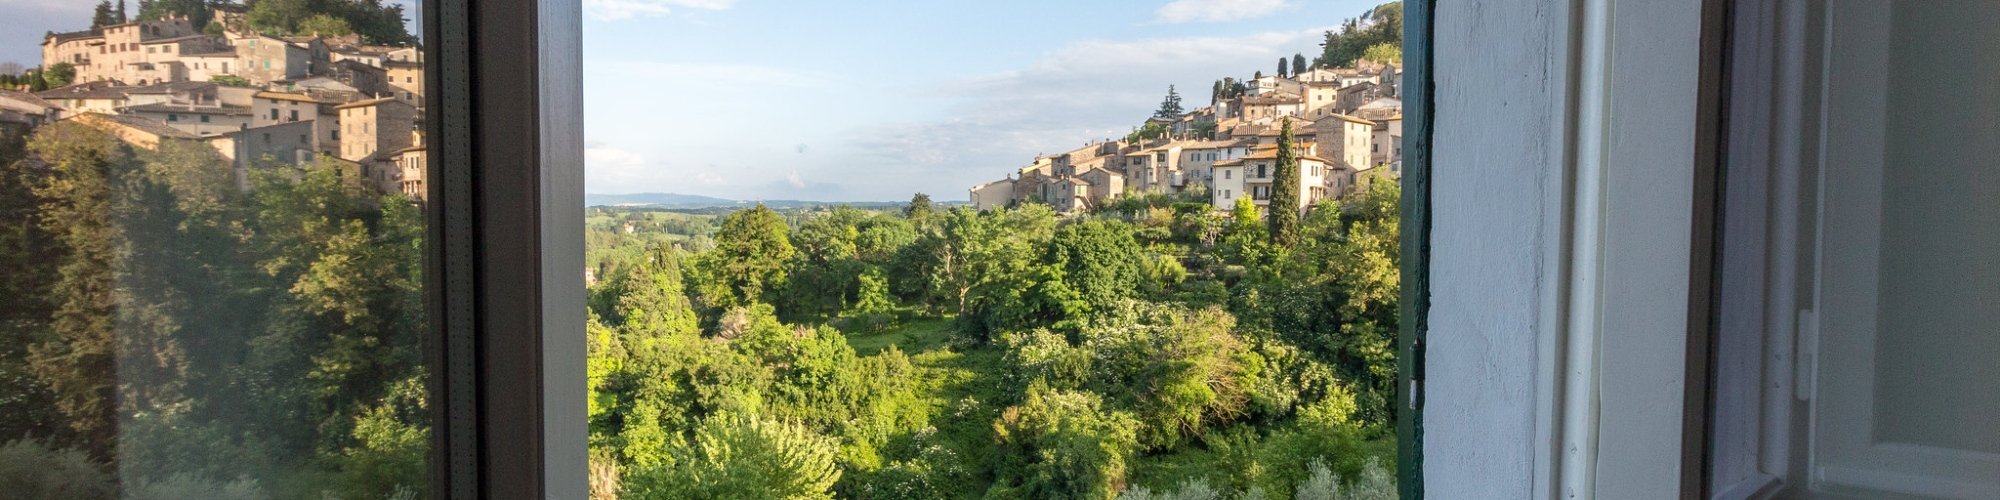 Vista de la campaña de Cetona en Toscana